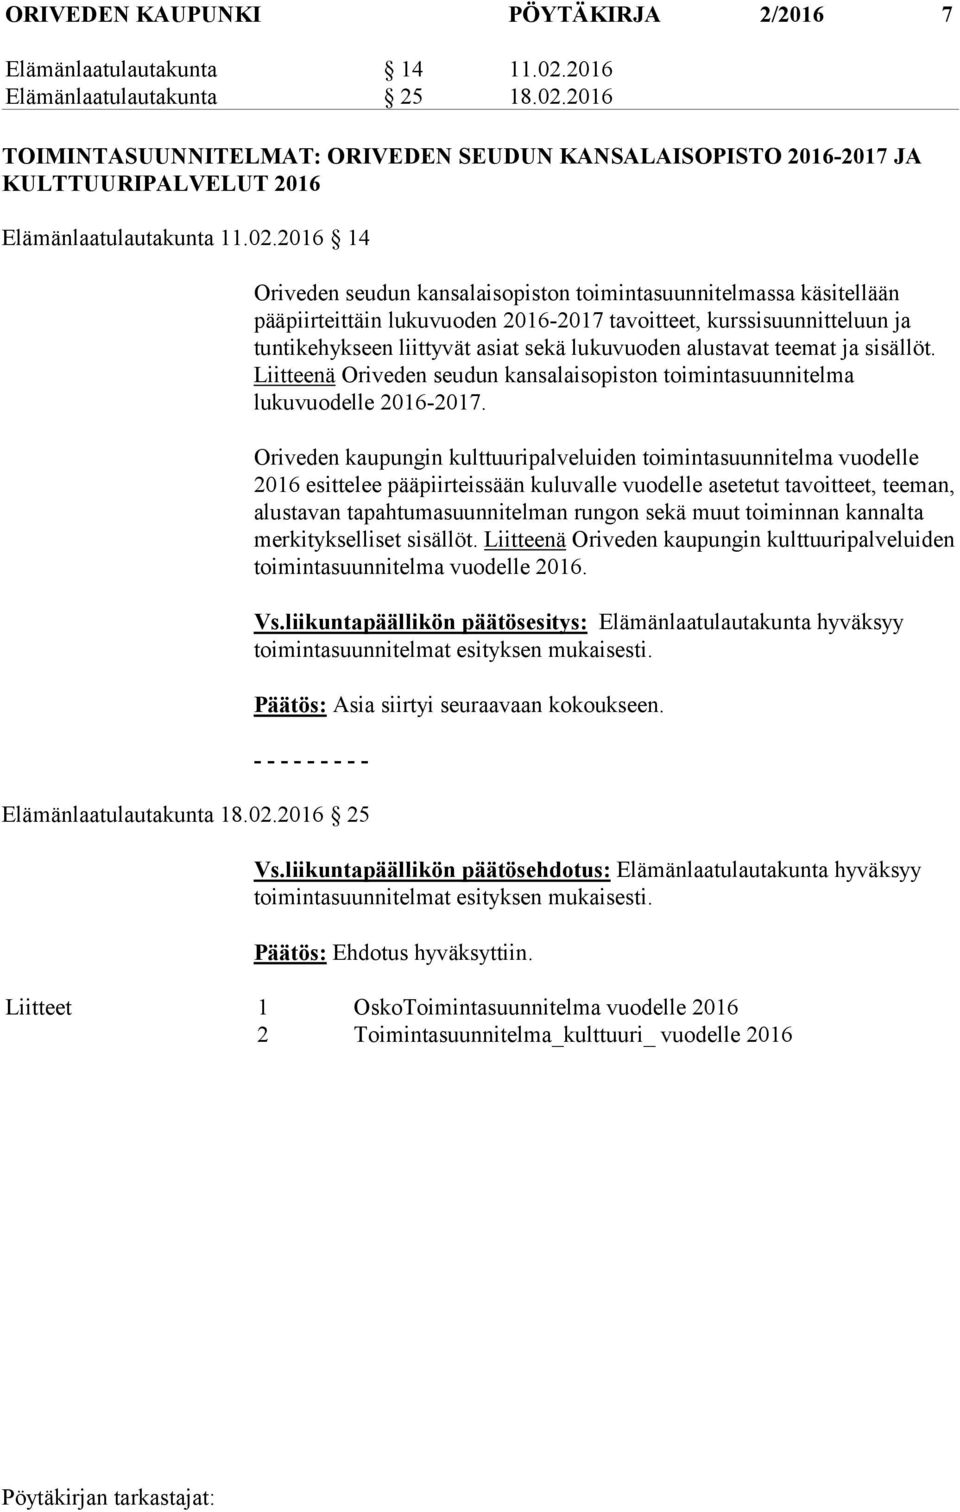 alustavat teemat ja sisällöt. Liitteenä Oriveden seudun kansalaisopiston toimintasuunnitelma lukuvuodelle 2016-2017.